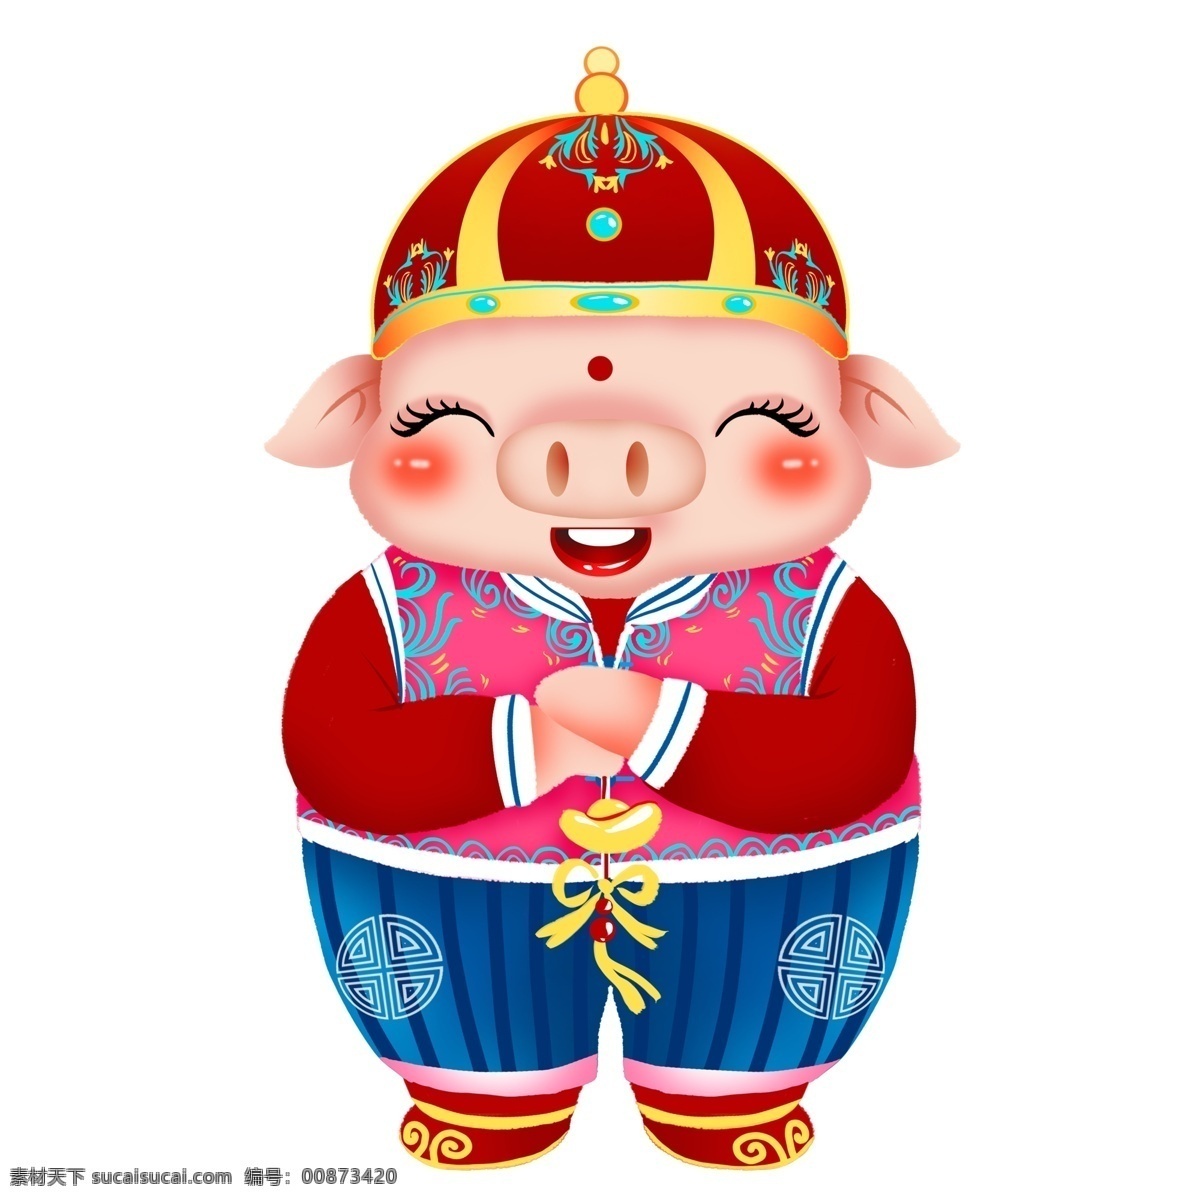 2019 年 猪年 小 猪 动物 元素 卡通 装饰 可爱 喜庆 透明素材 手绘 金猪 猪猪 免抠元素